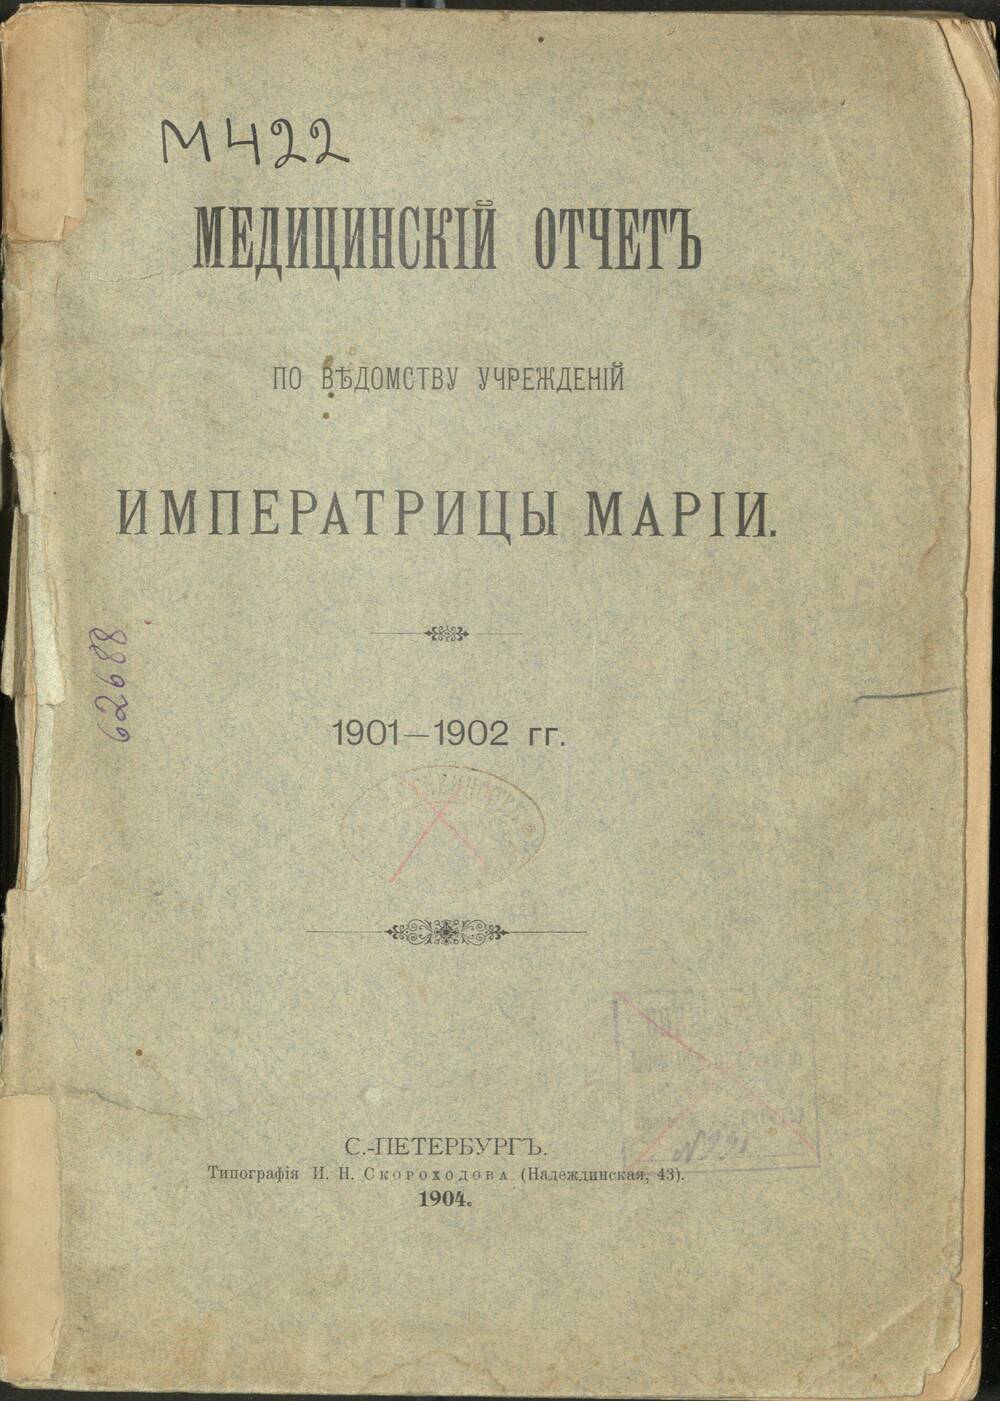 Книга Медицинский отчет по ведомству учреждений Императрицы Марии за 1901-1902 гг.